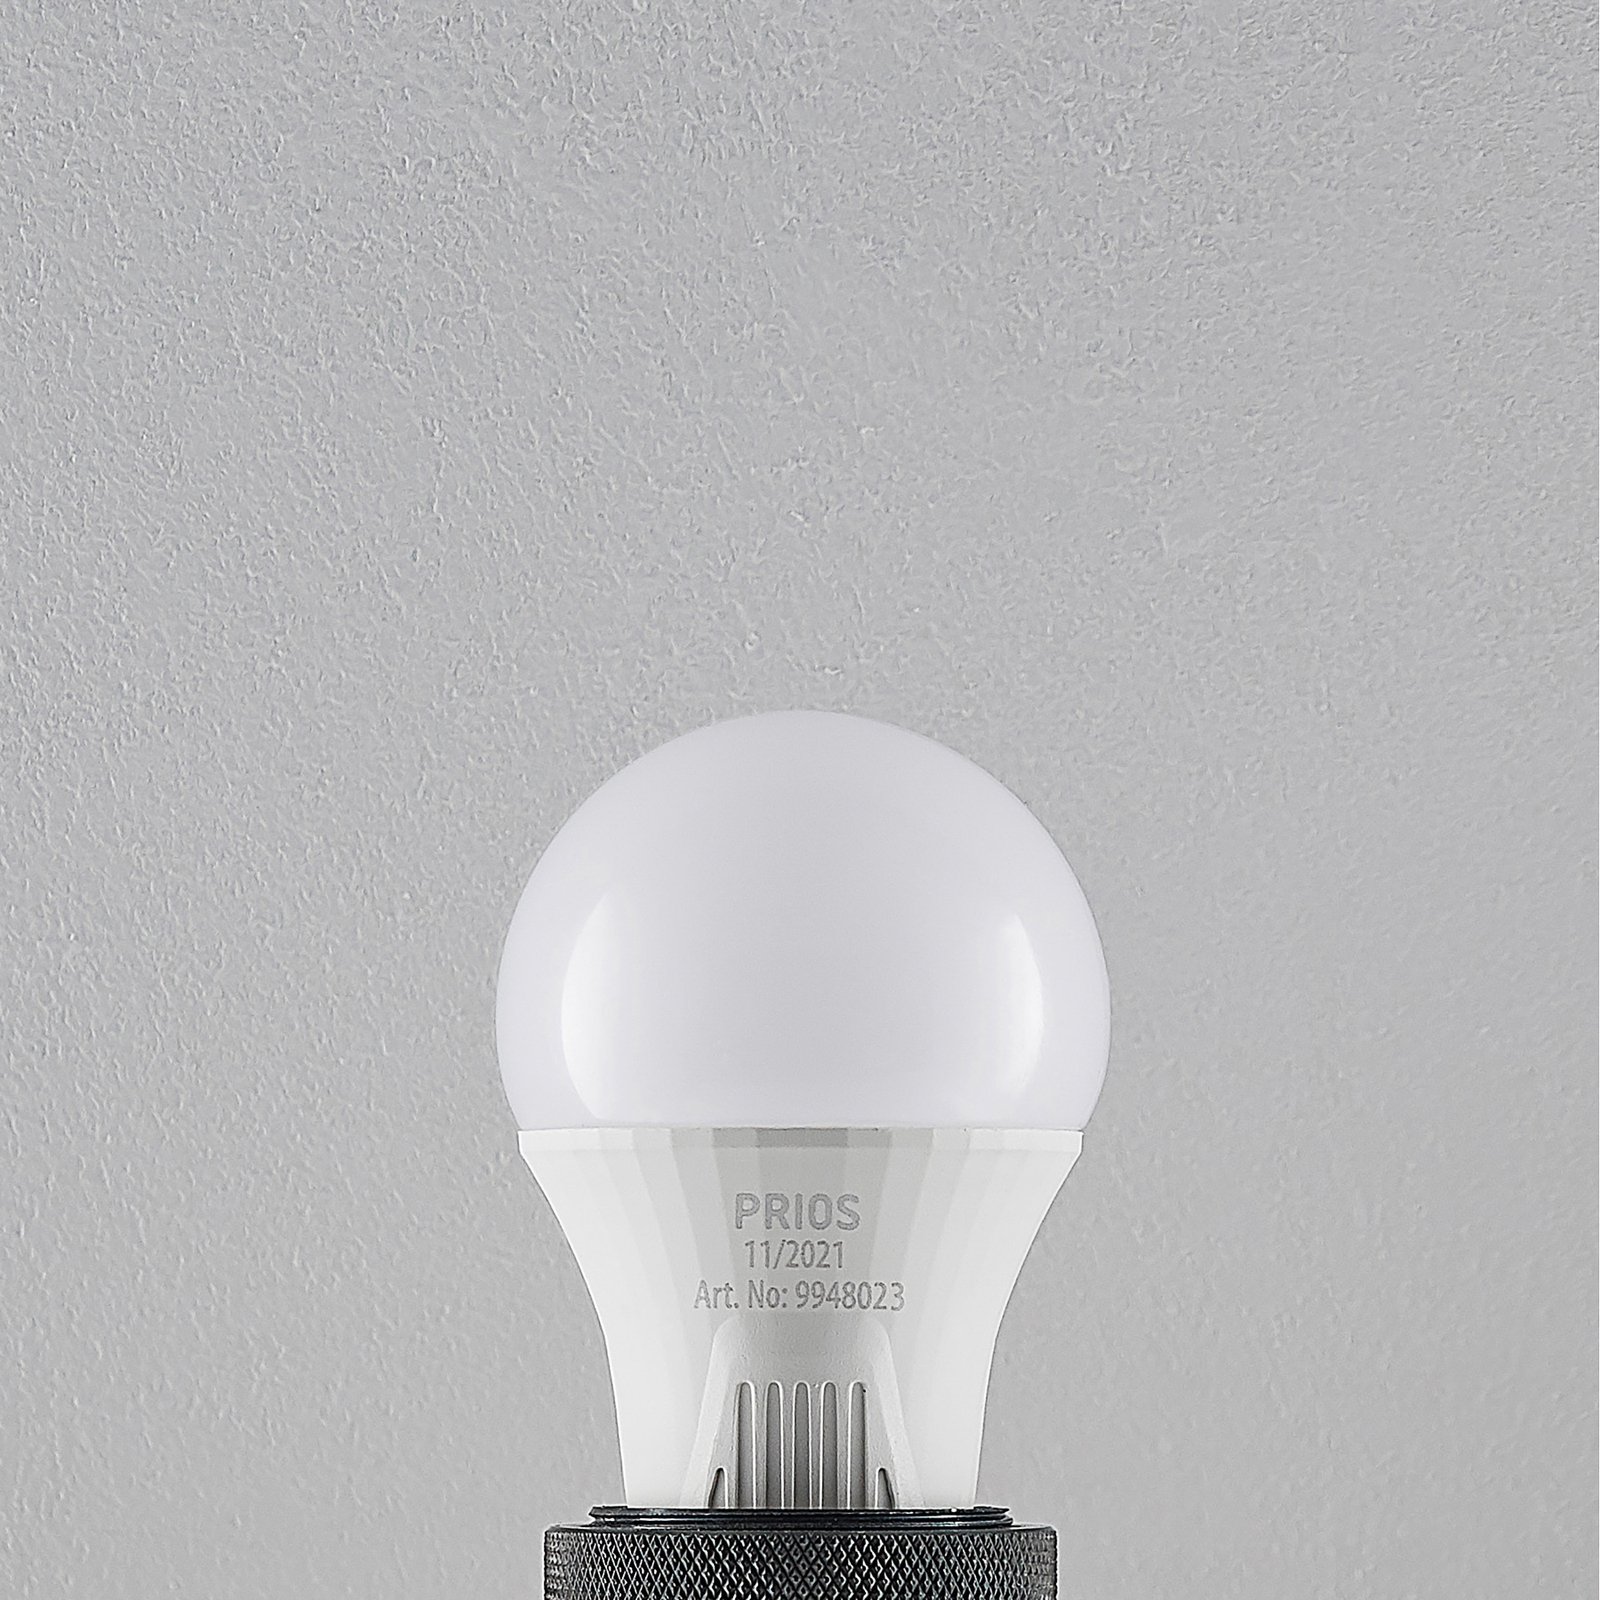 LED-Lampe E27 A60 11W weiß 2.700K 10er-Set